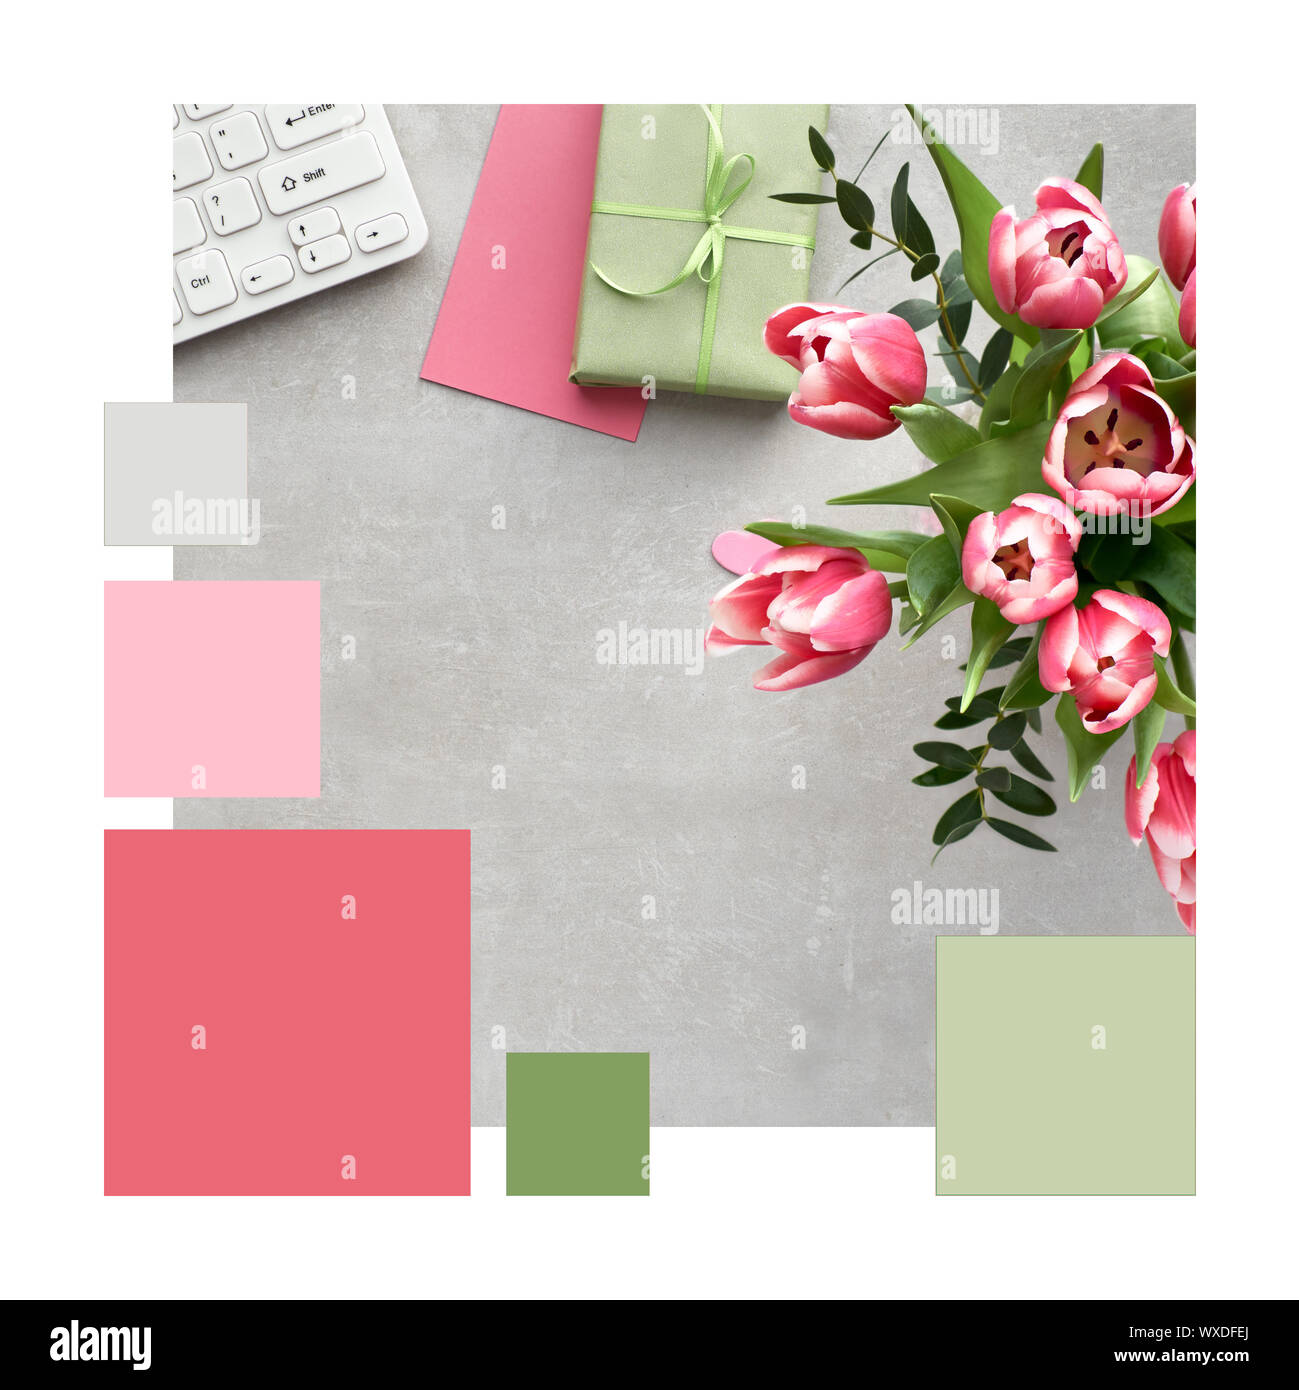 Correspondance des couleurs trendy palette complémentaire de printemps, l'espace de travail de mise à plat avec des tulipes roses, eucalyptus, claviers, cartes et boîte-cadeau sur la pierre Banque D'Images